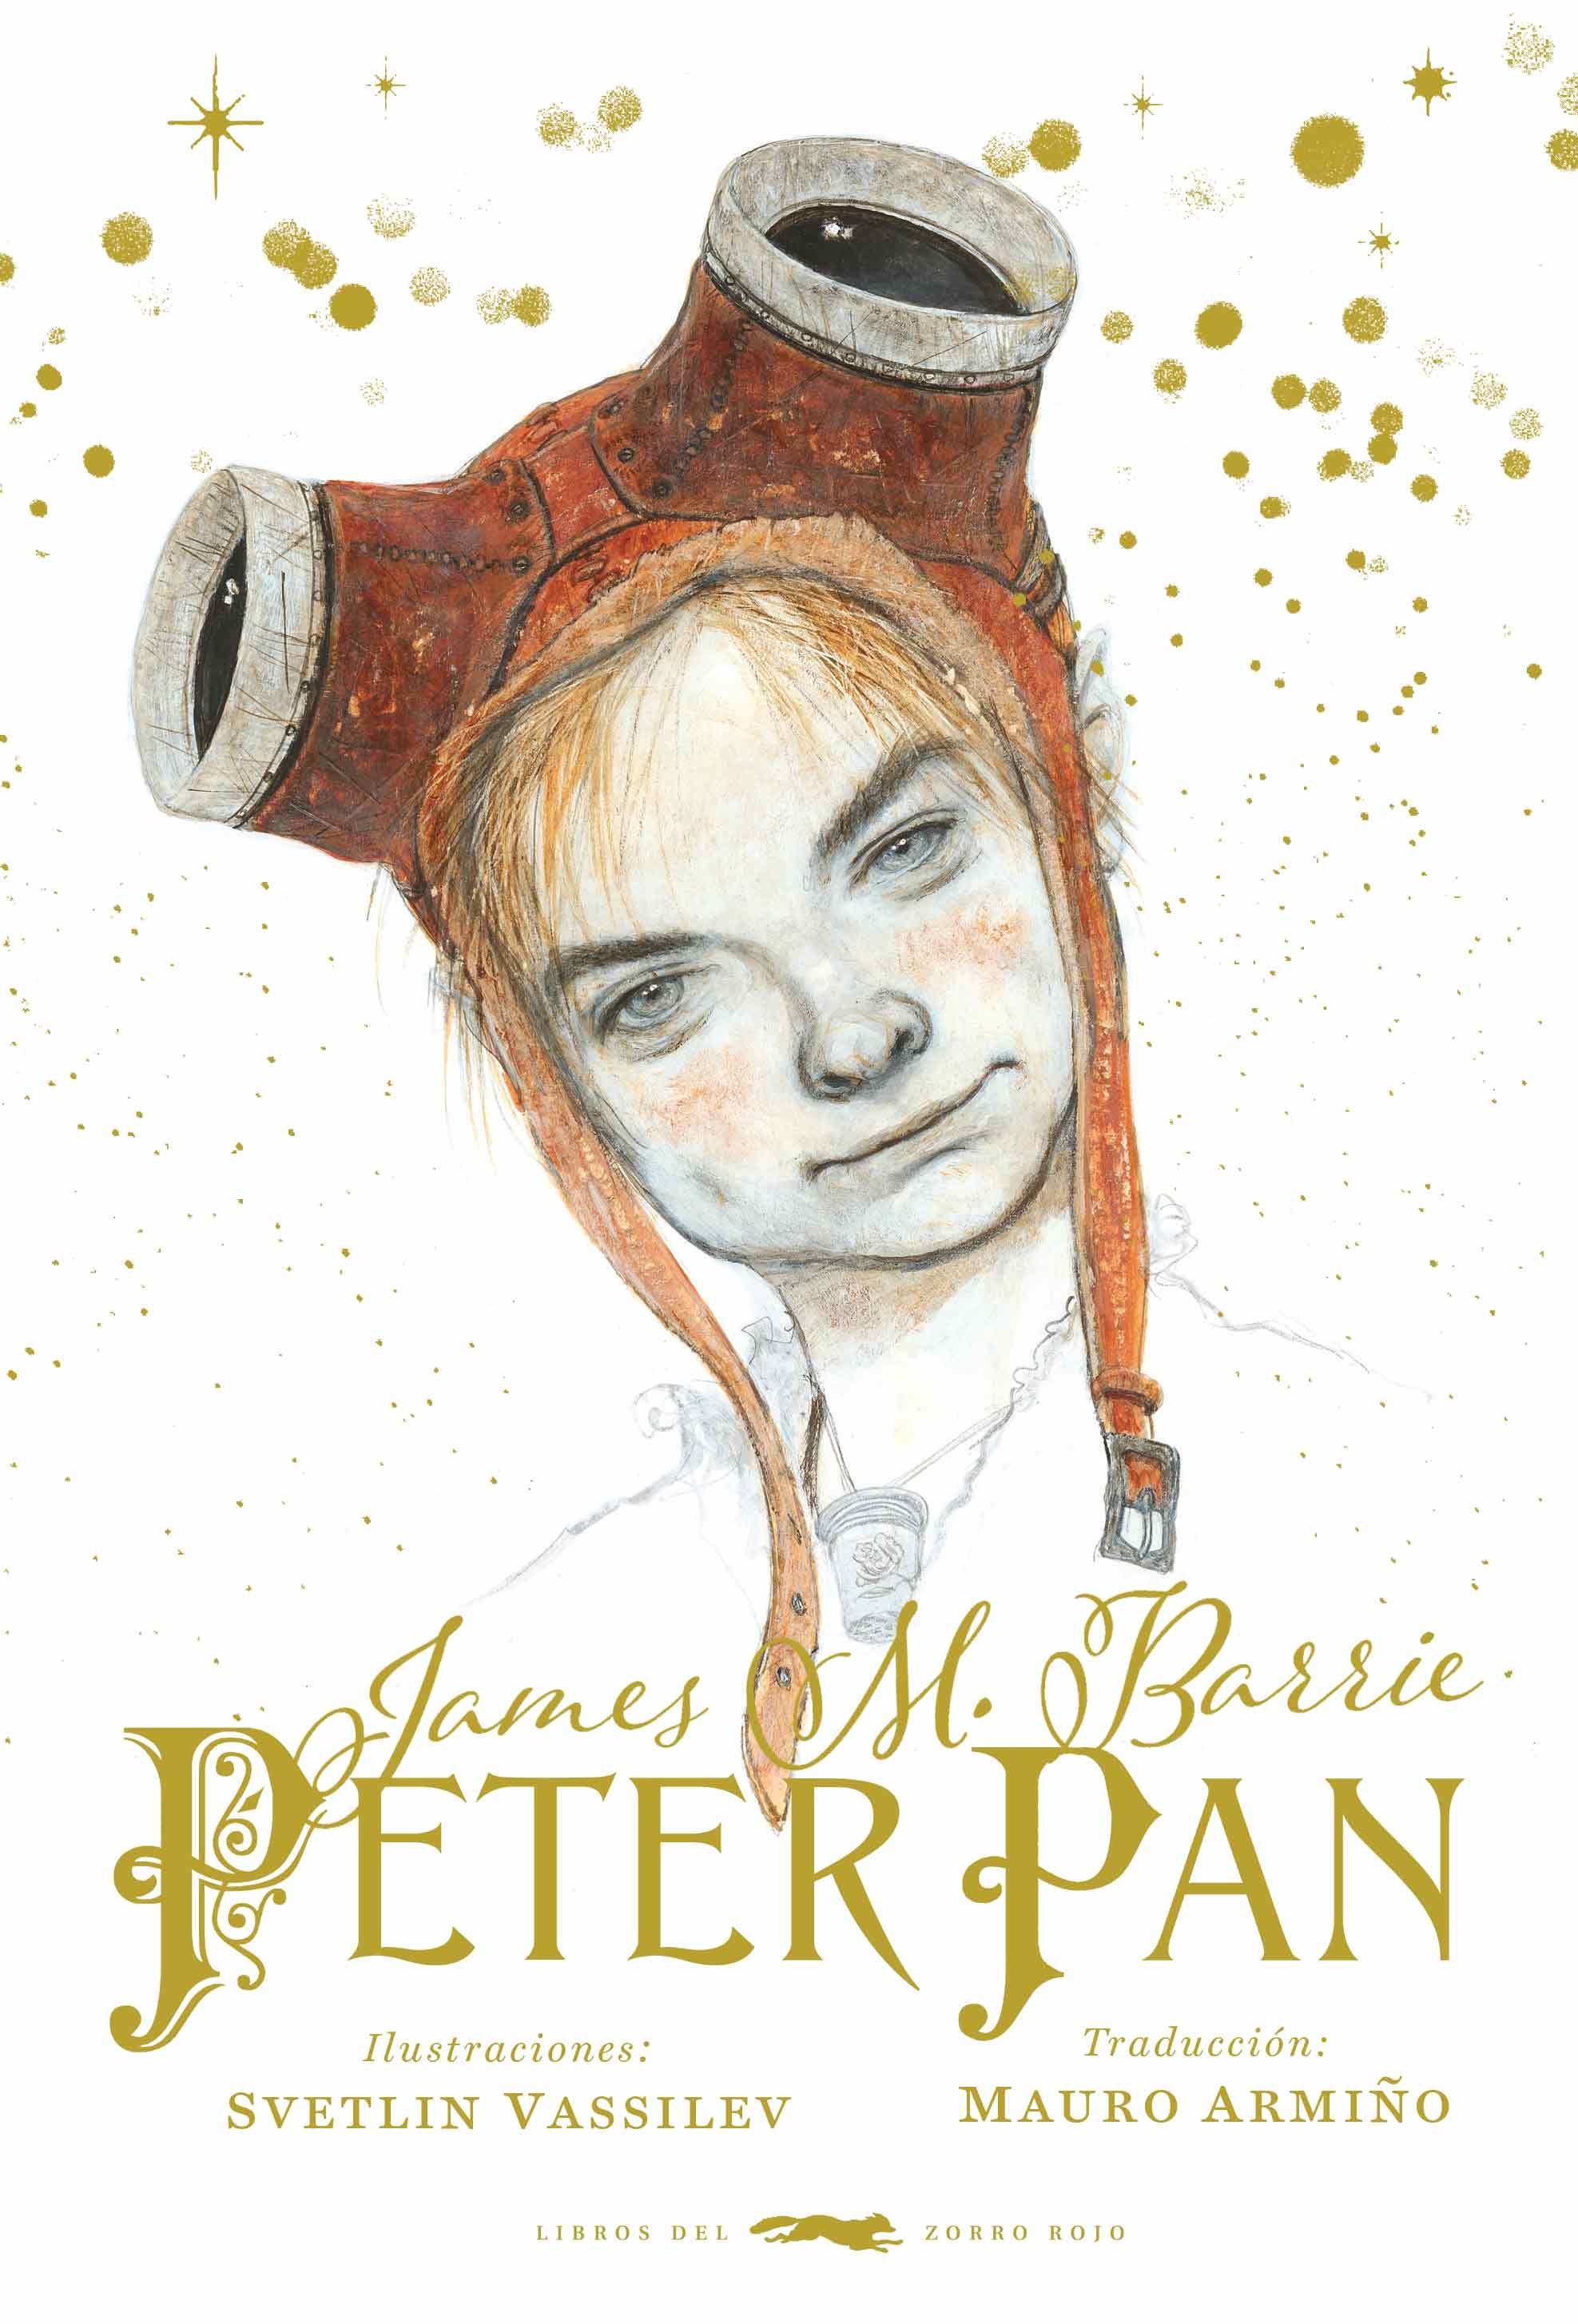 Peter Pan. 